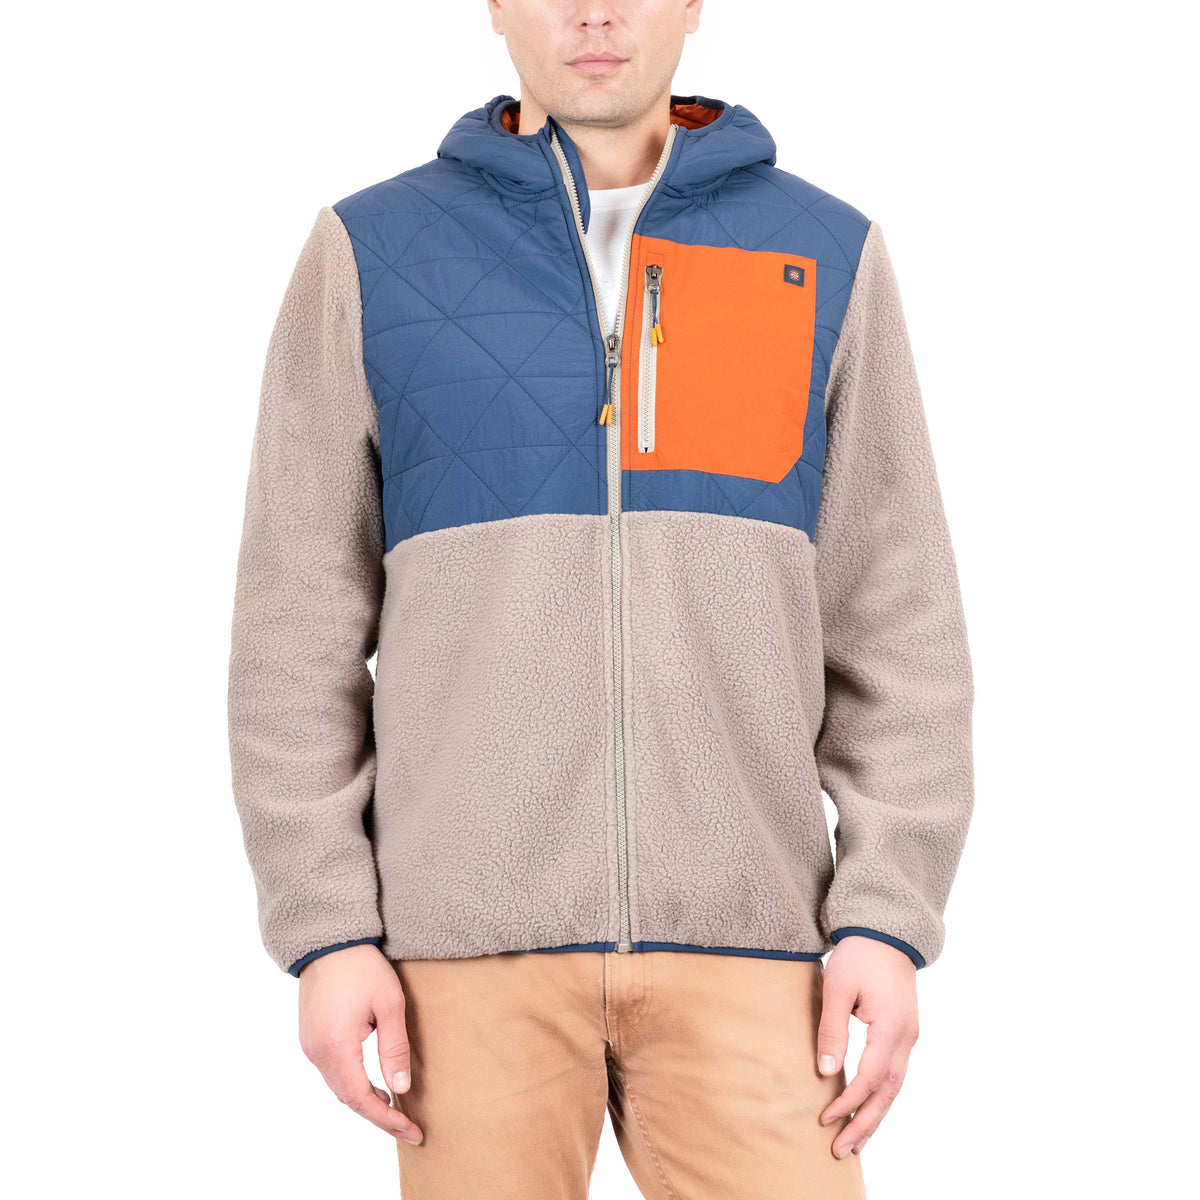 Gerry Terra Printed High Pile Fleece Jacket - Full Zip - Save 64%